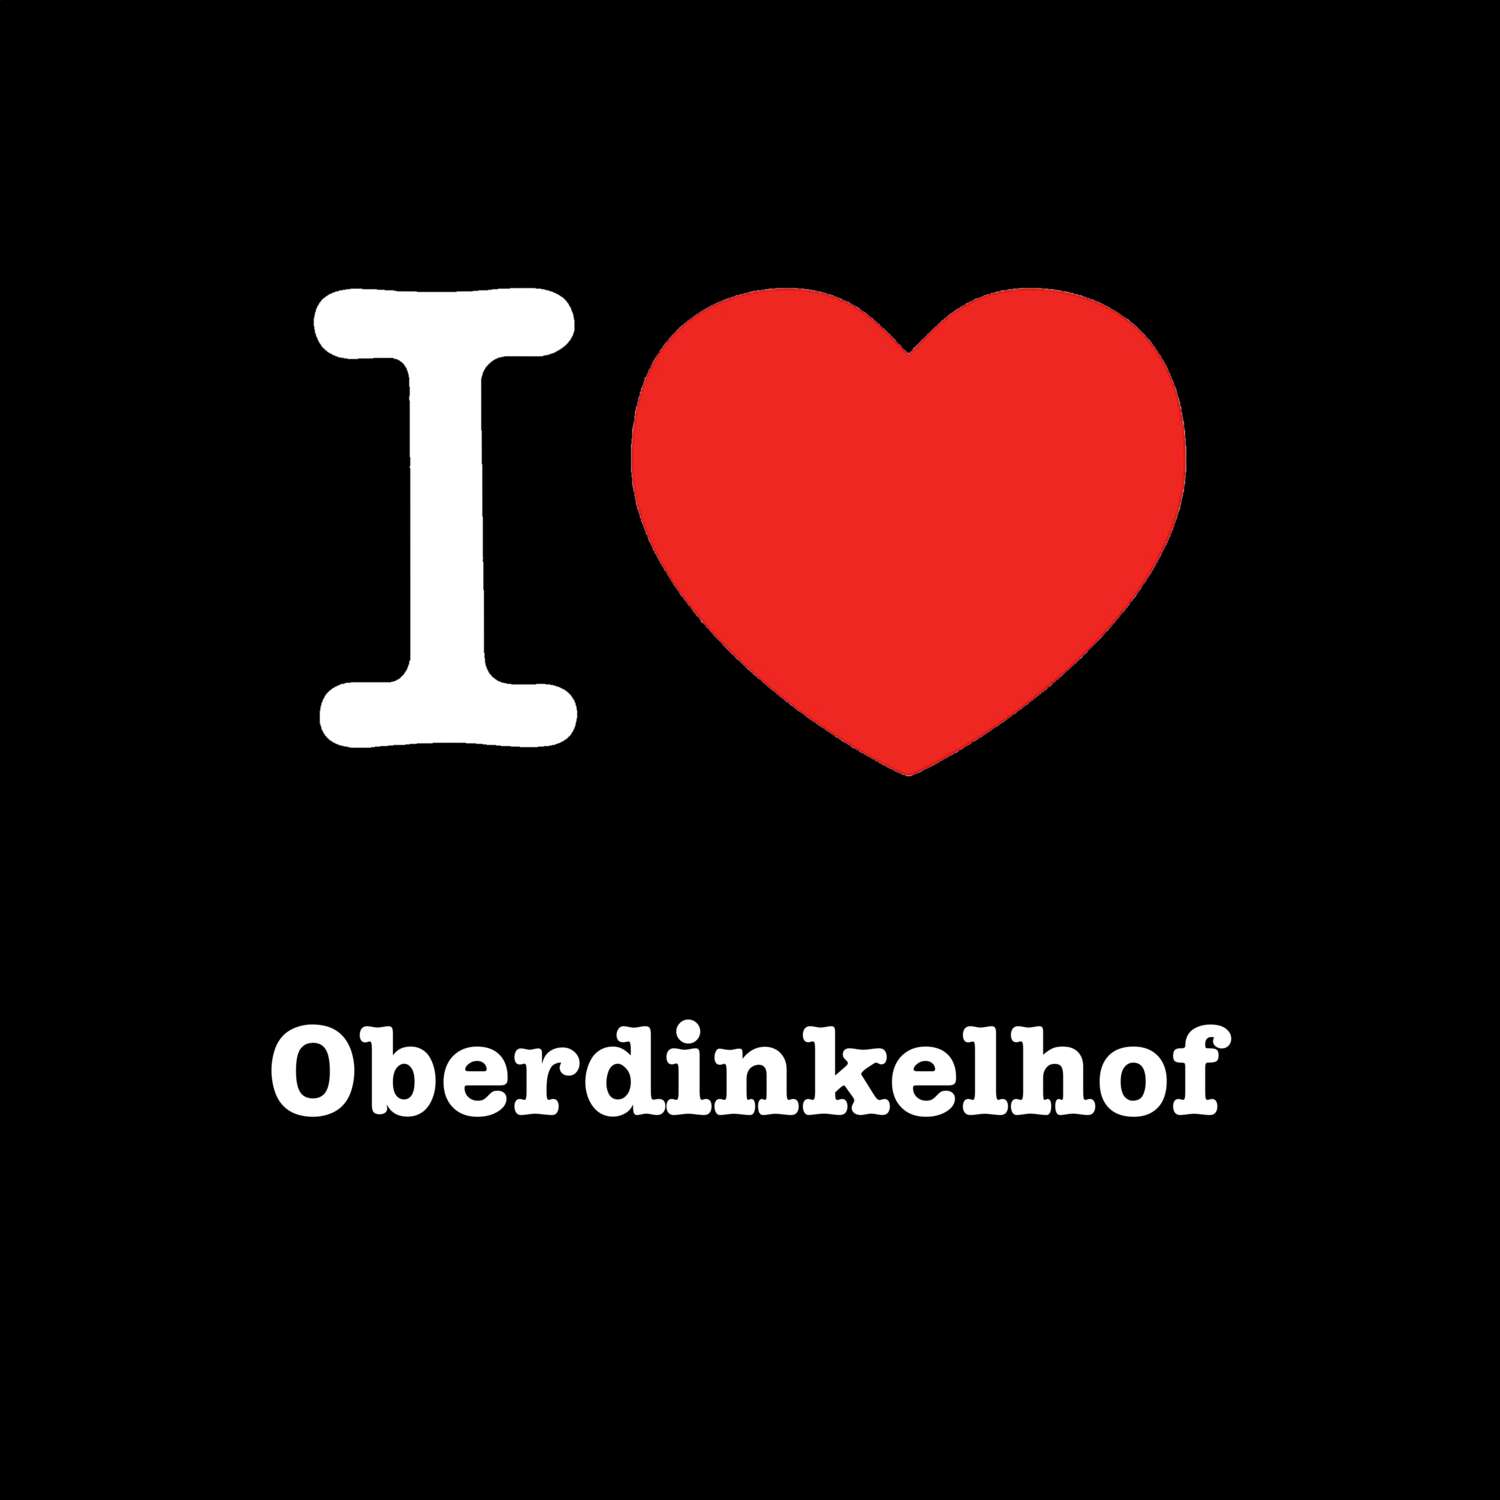 Oberdinkelhof T-Shirt »I love«